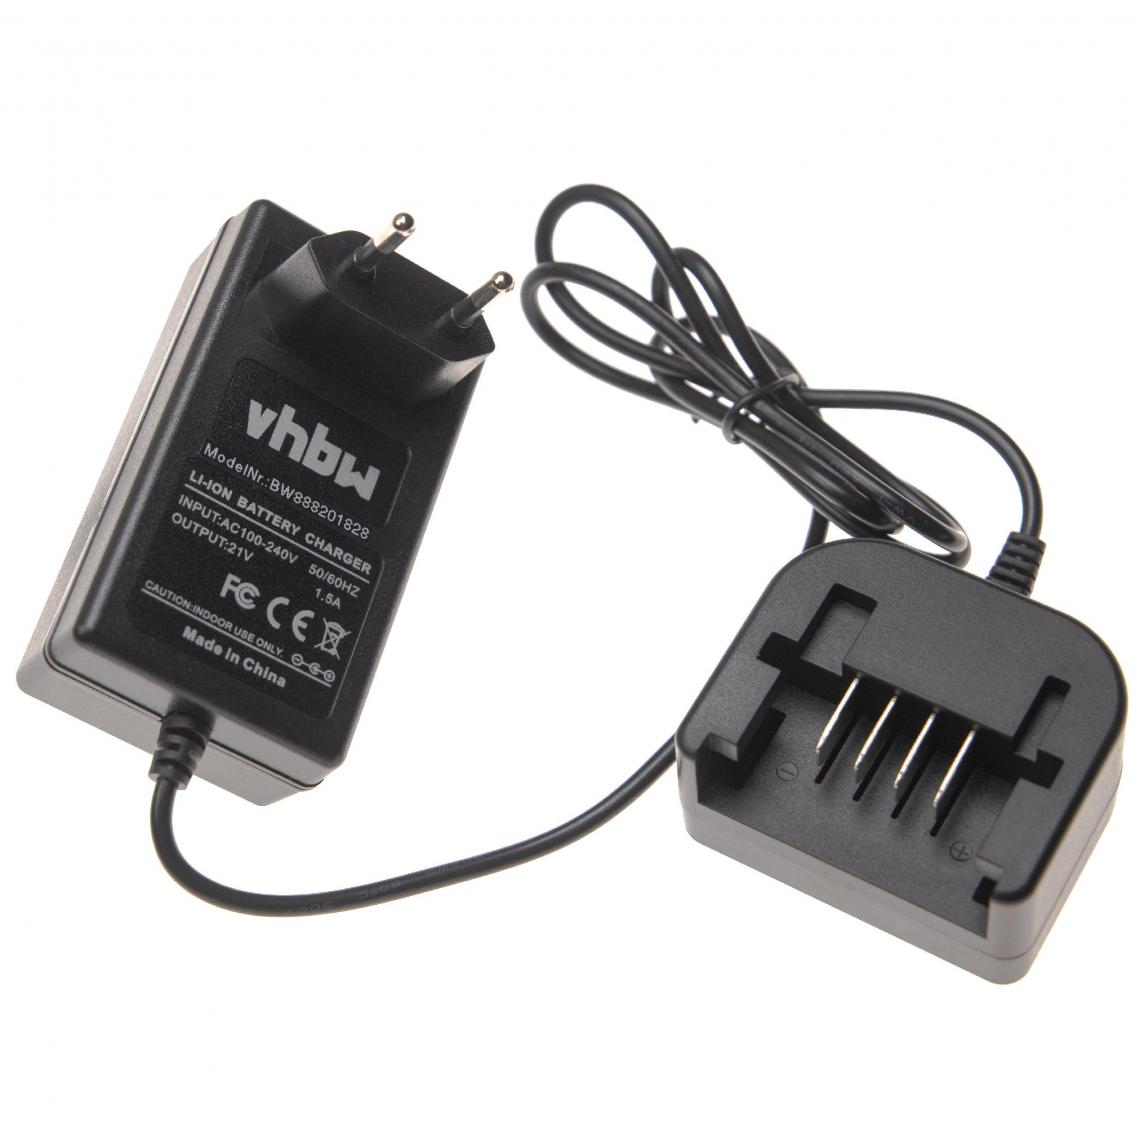 Vhbw - vhbw Chargeur compatible avec Worx WG894E.9, WX026, WX026.9, WX090, WX166, WX166.1, WX166.2, WX166.3, WX166.4 batteries Li-ion d'outils (20V) - Clouterie